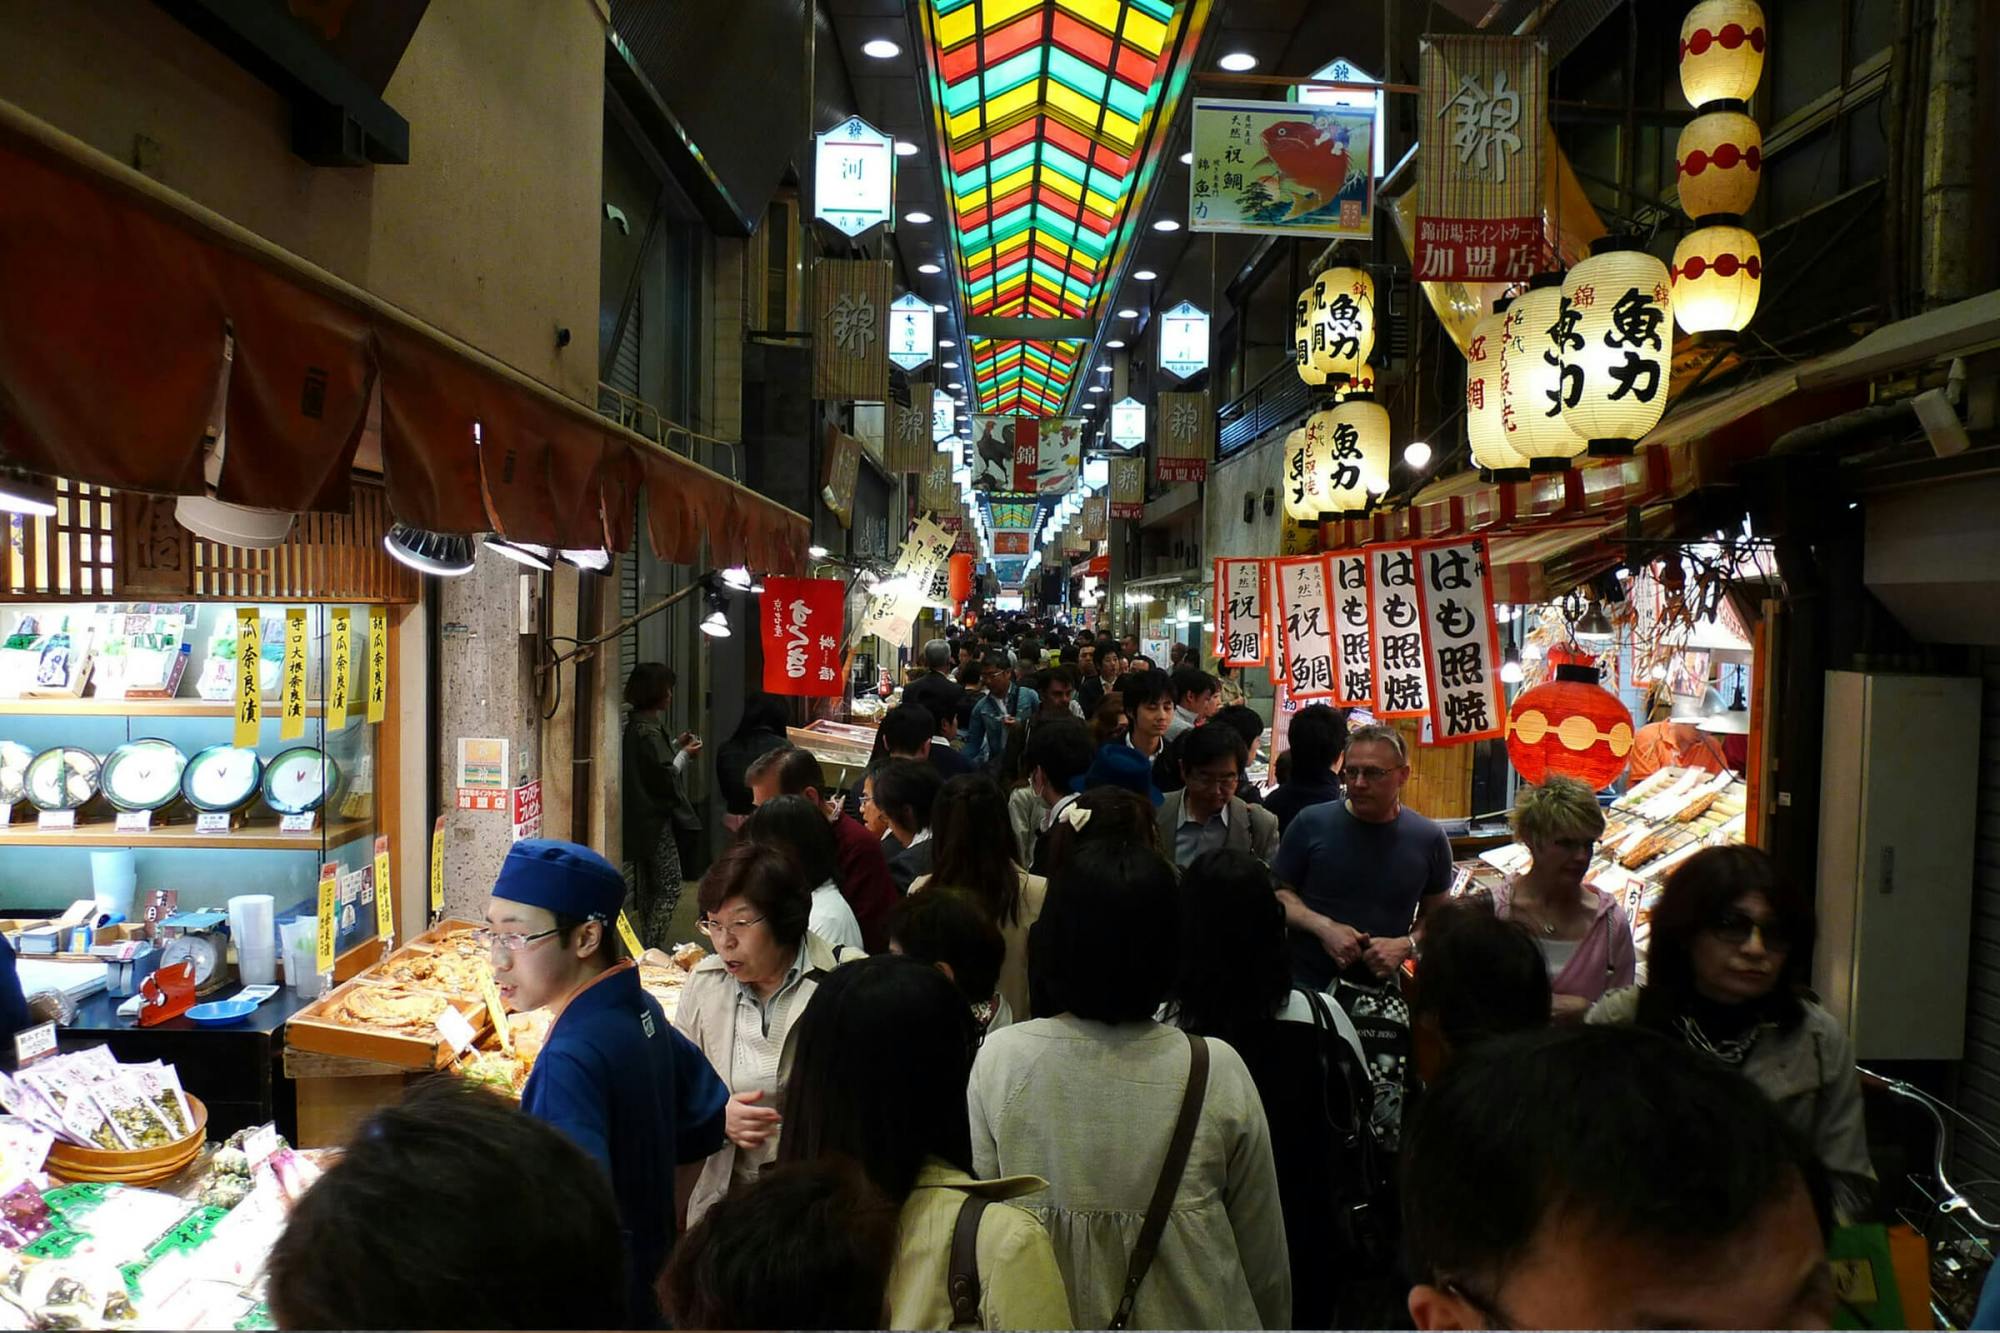 Wycieczka kulinarna po targu Nishiki w Kioto